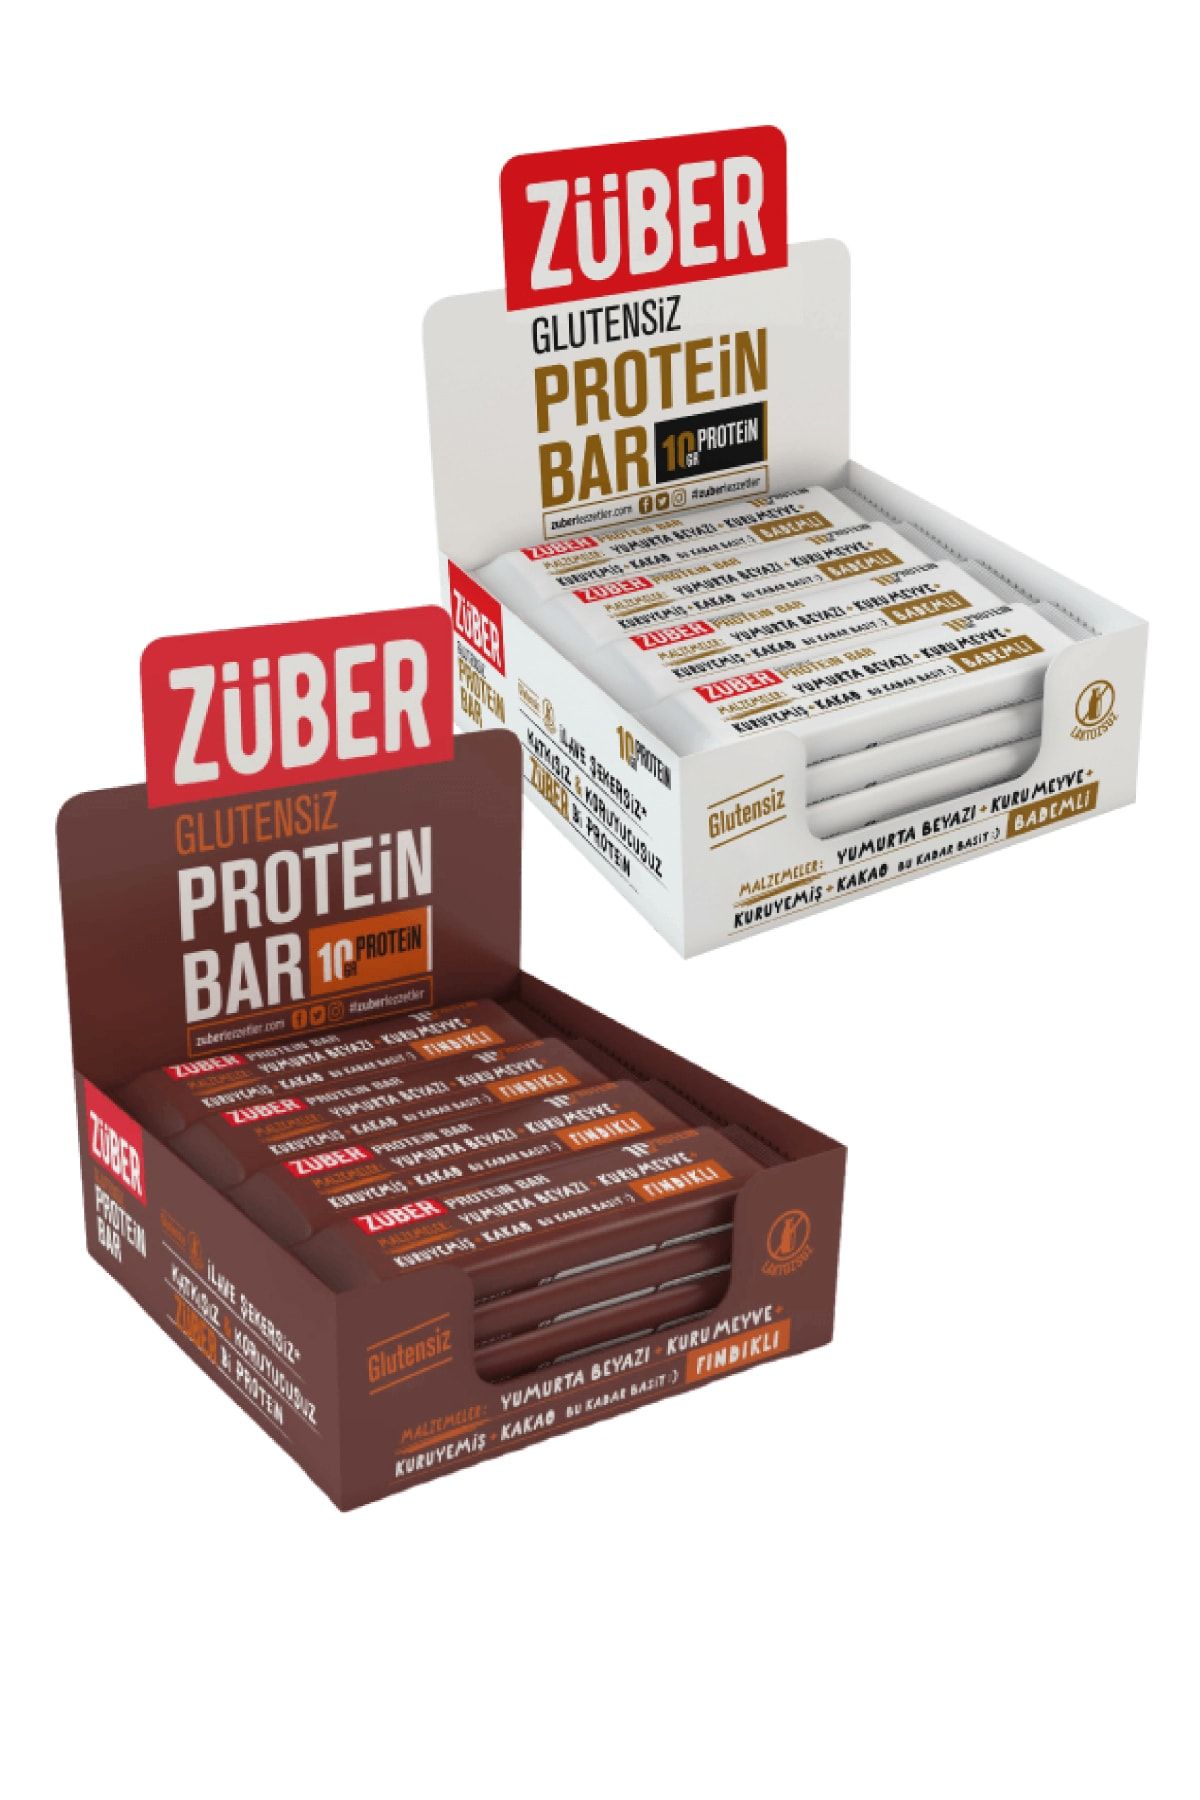 Züber Bademli Ve Fındıklı Protein Barı 35 gr X 24 Adet Glutensiz Doğal Lifli Bar